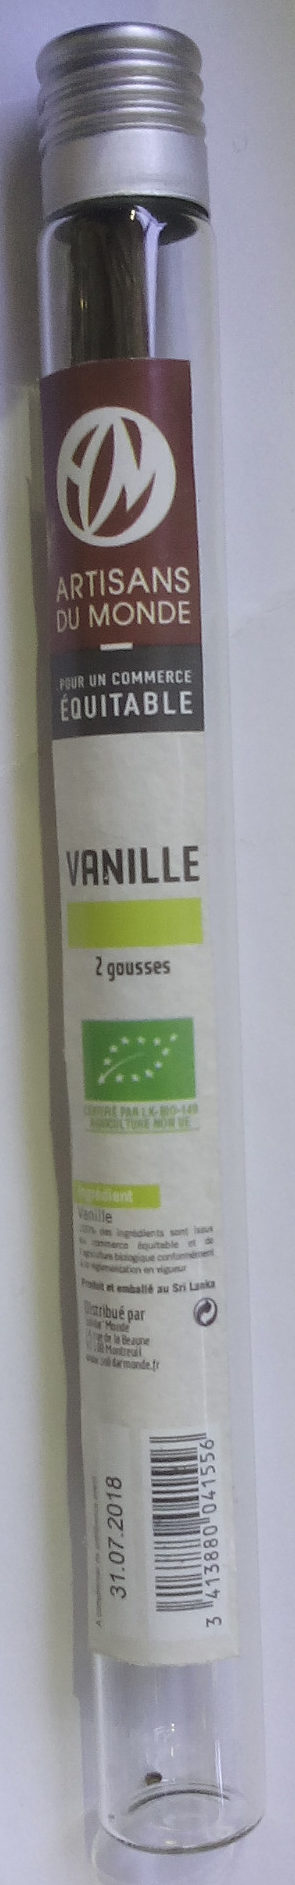 Gousses de Vanille - Produit